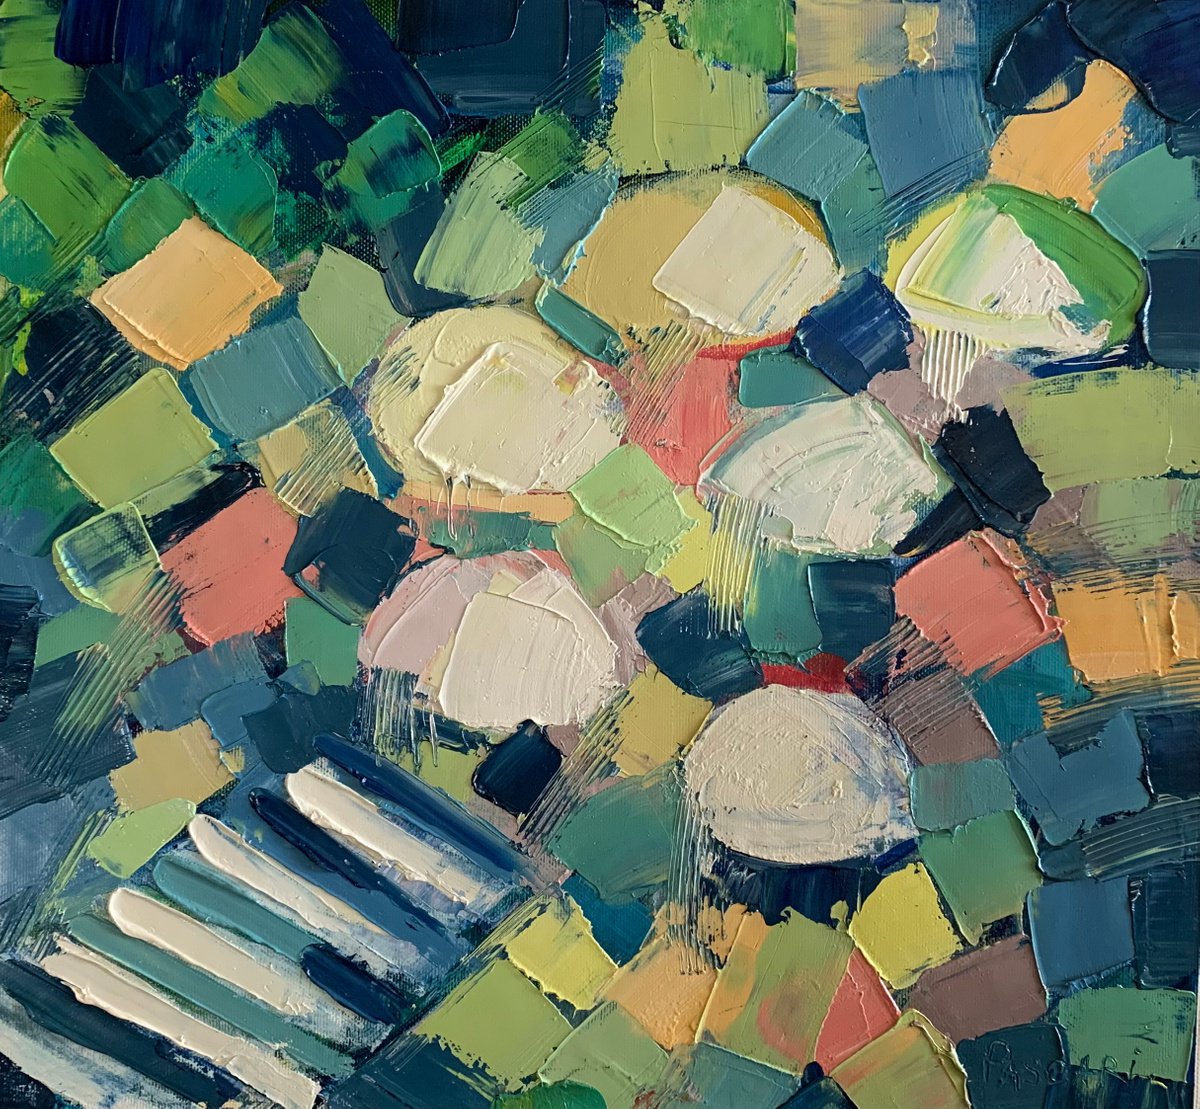 Abstract Rain umbrella by Olga Pascari